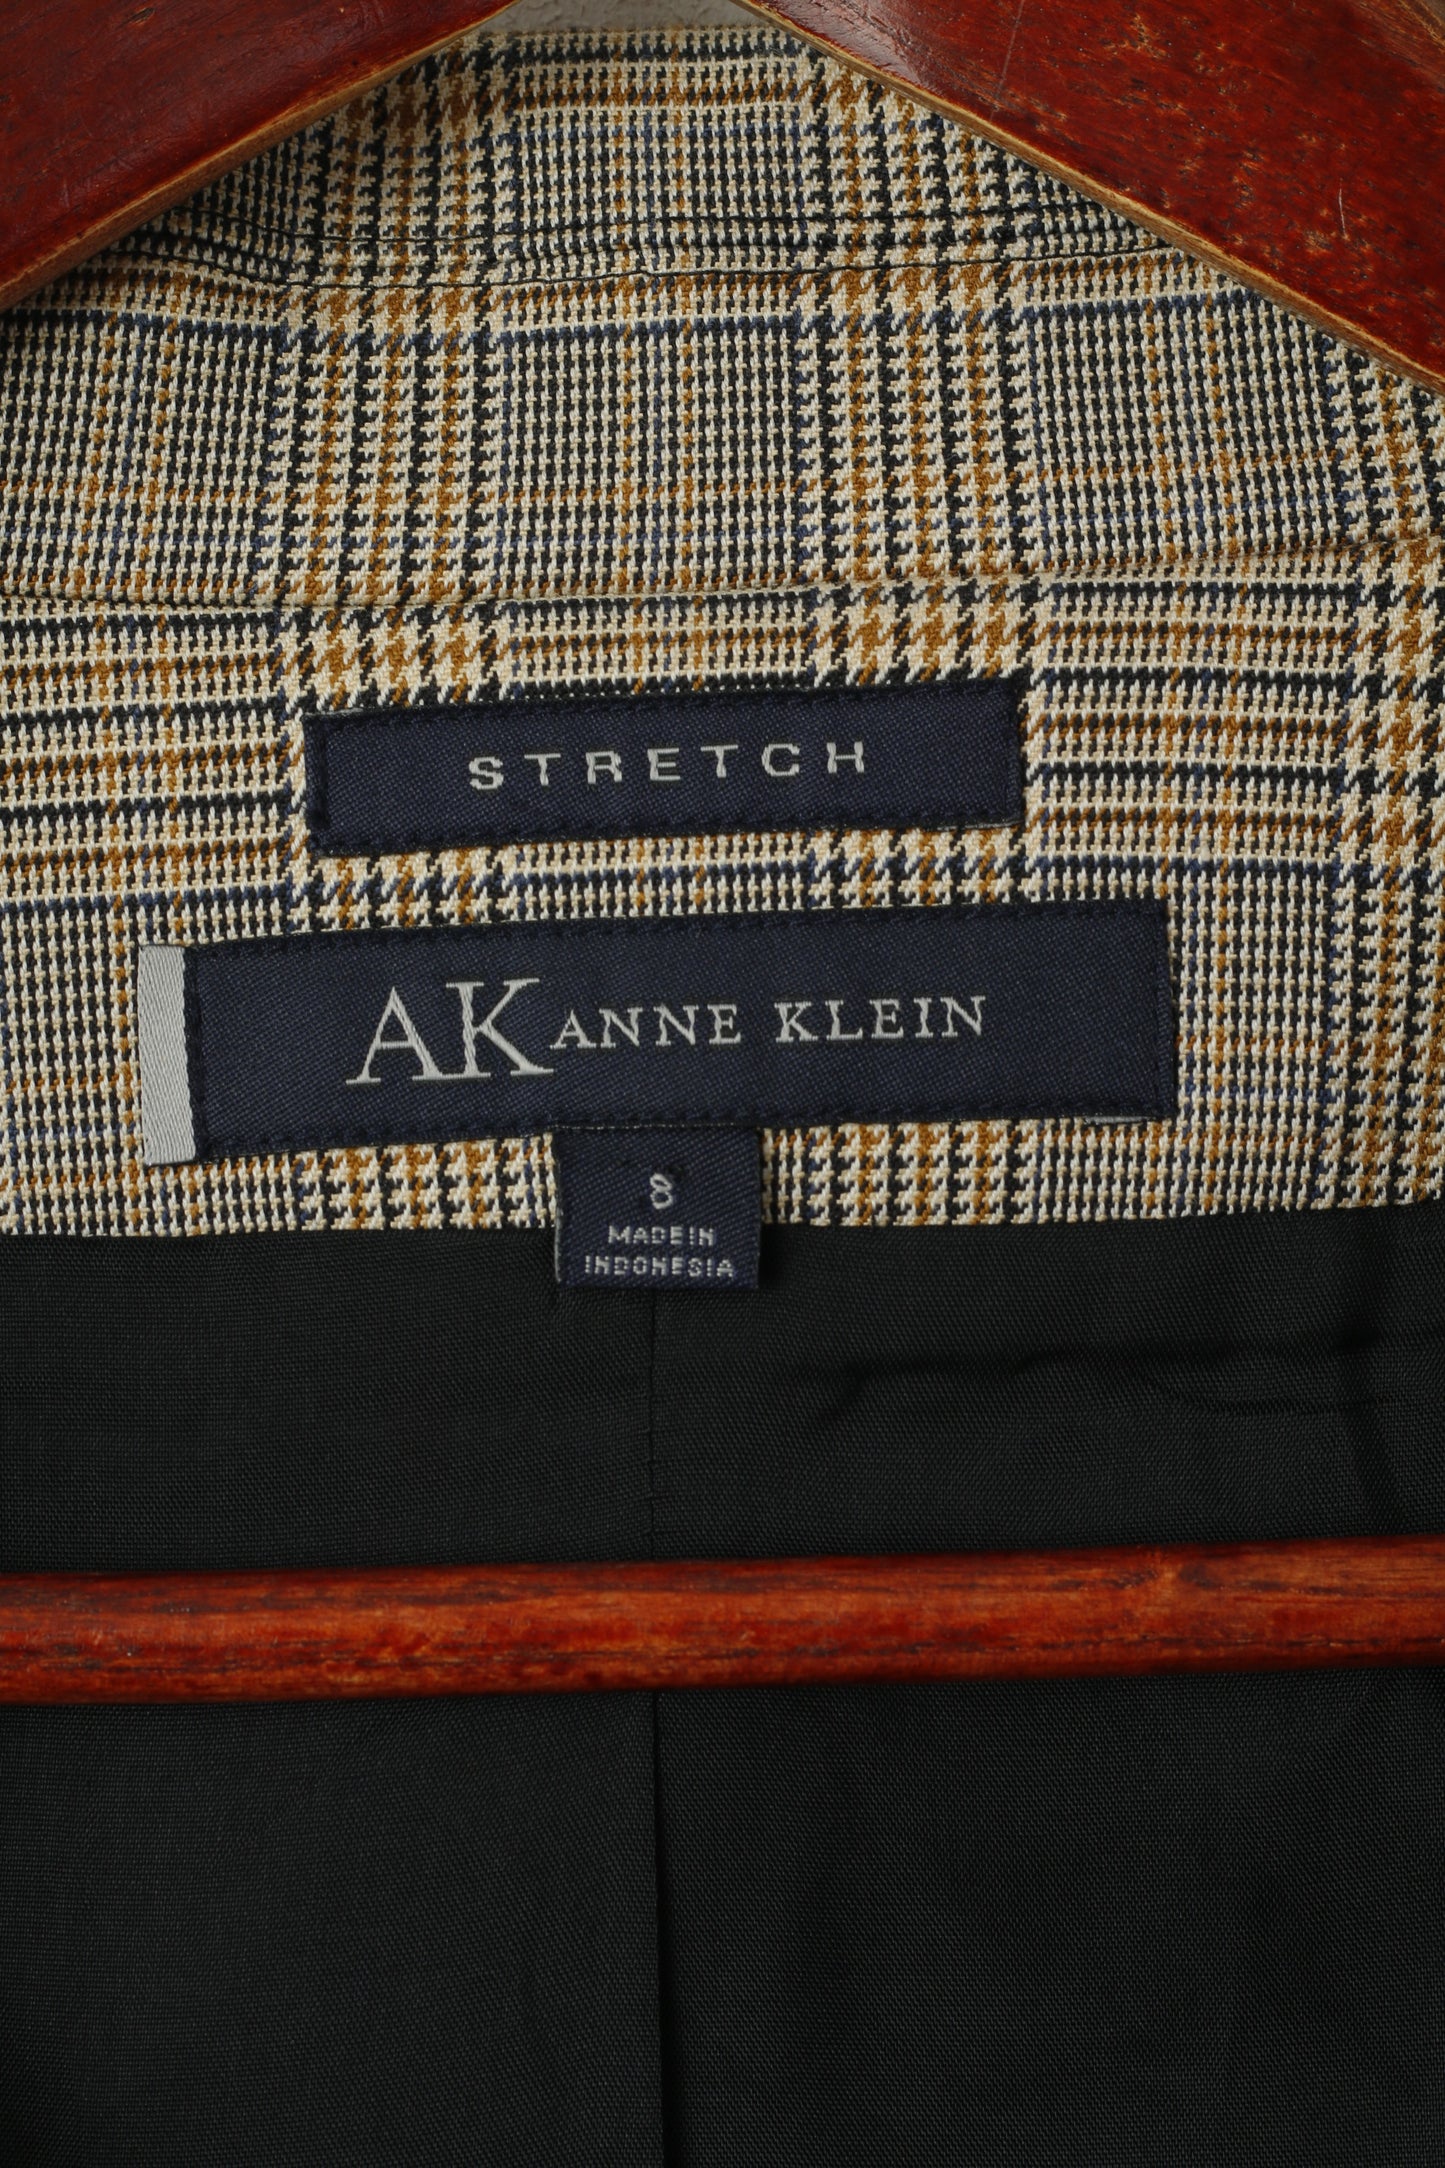 Giacca Anne Klein da donna 8 M, giacca corta con maniche a 3/4 in cotone elasticizzato a quadri marroni